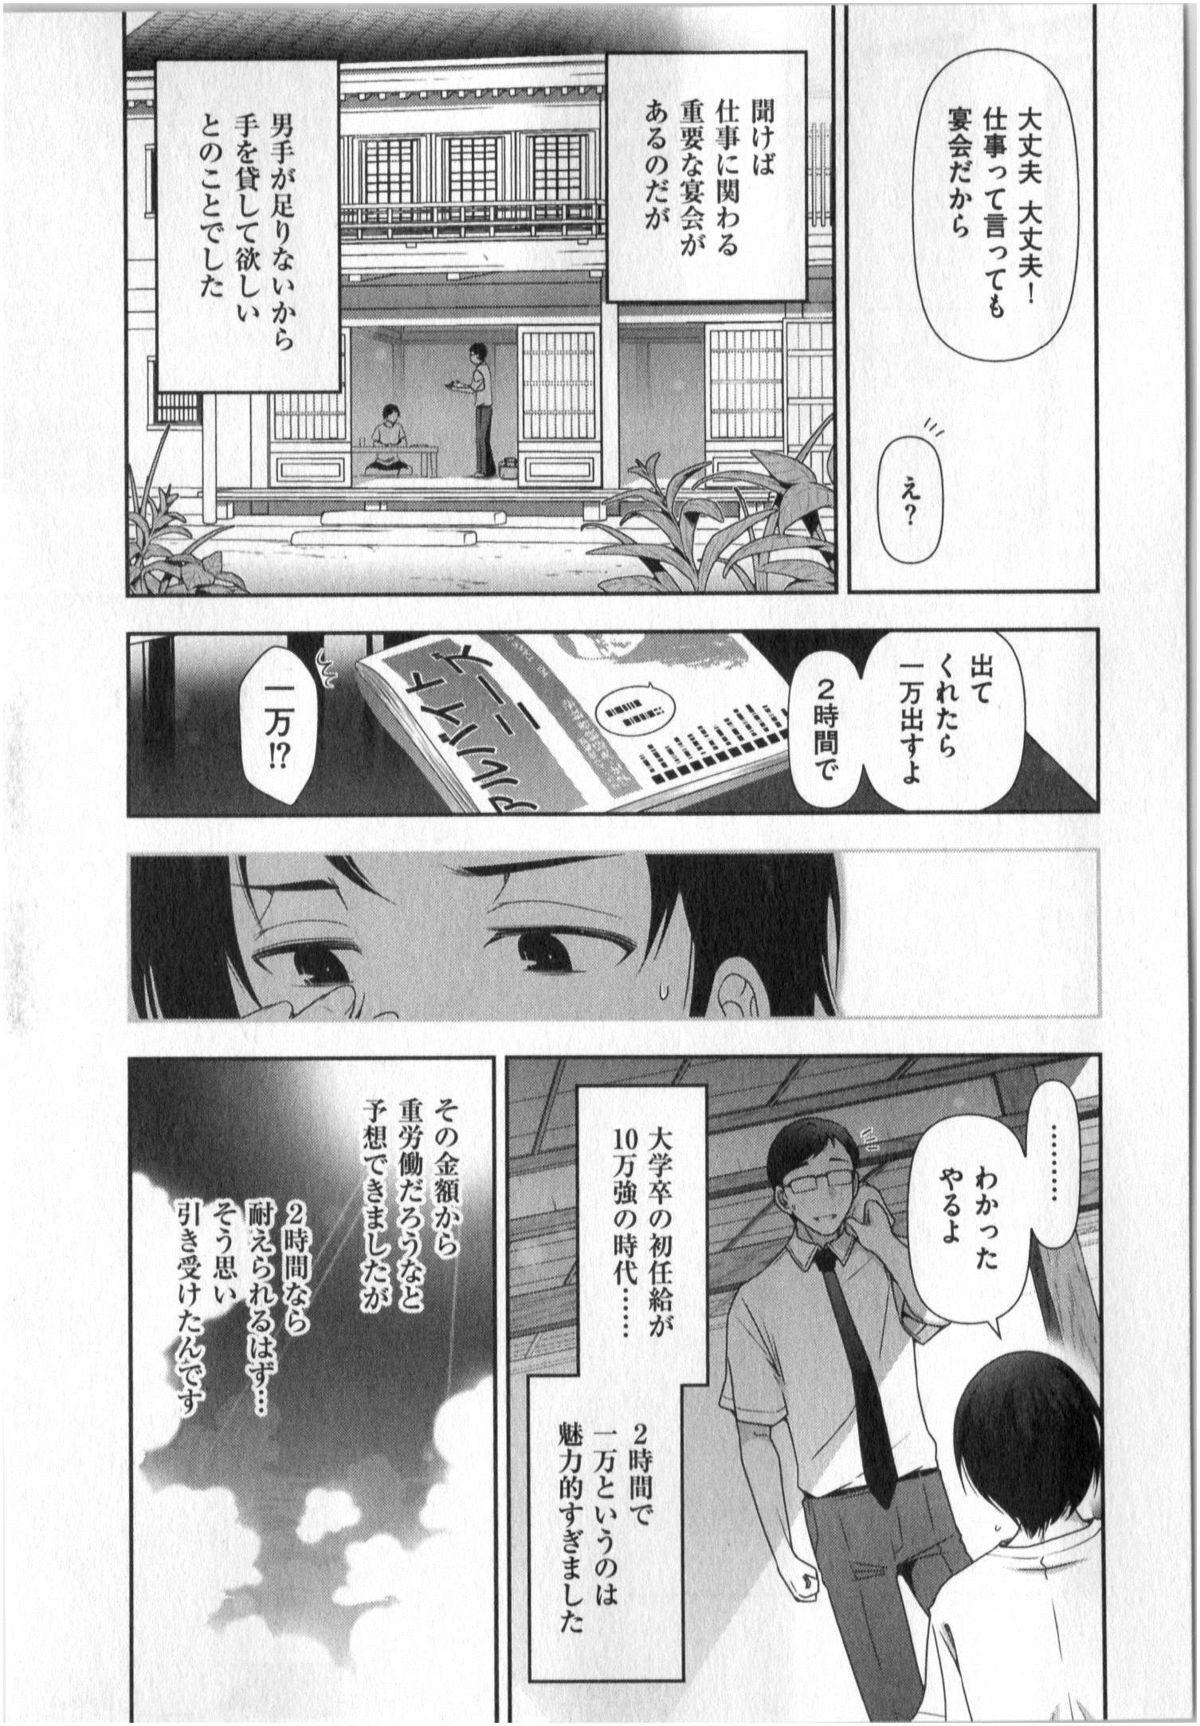 Yonimo Ecchi na Toshidensetsu vol. 01 66